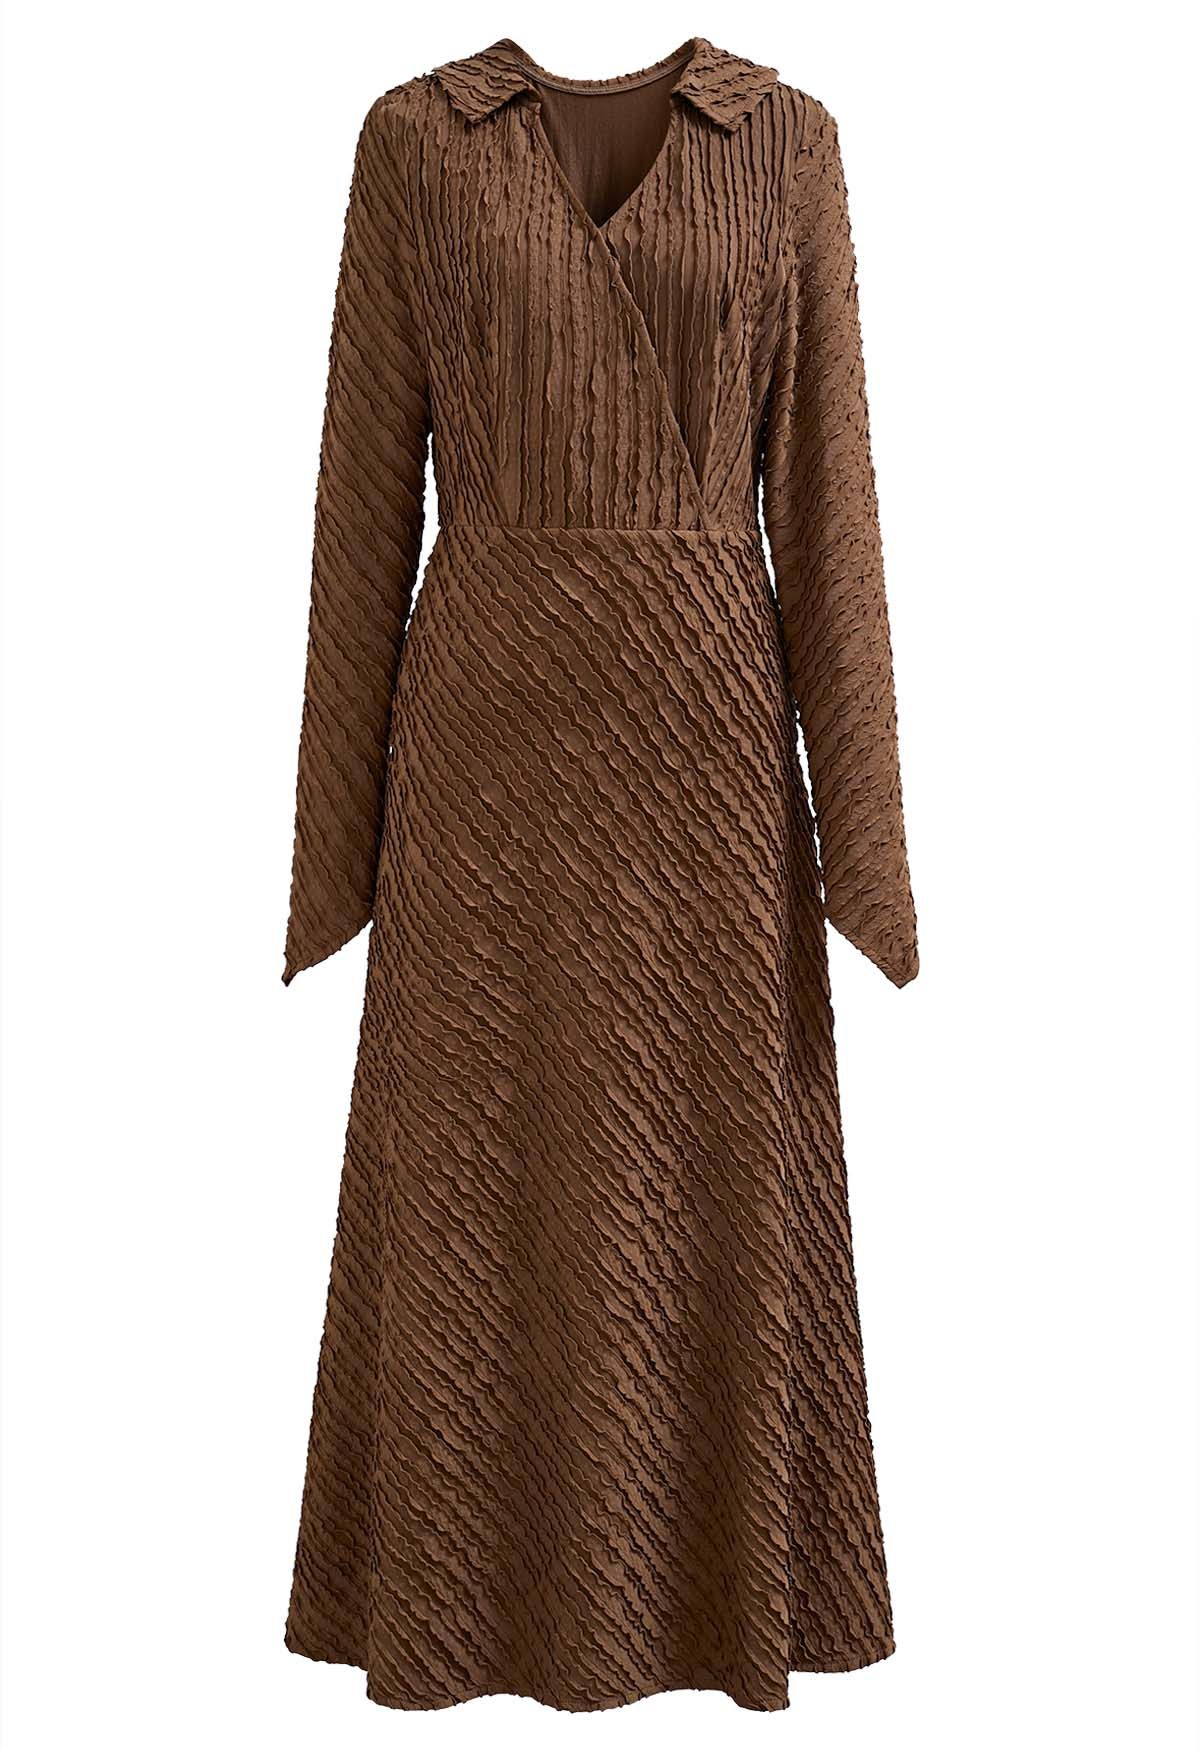 Collared Surplice Neckline Wavy Texture Dress in Caramel